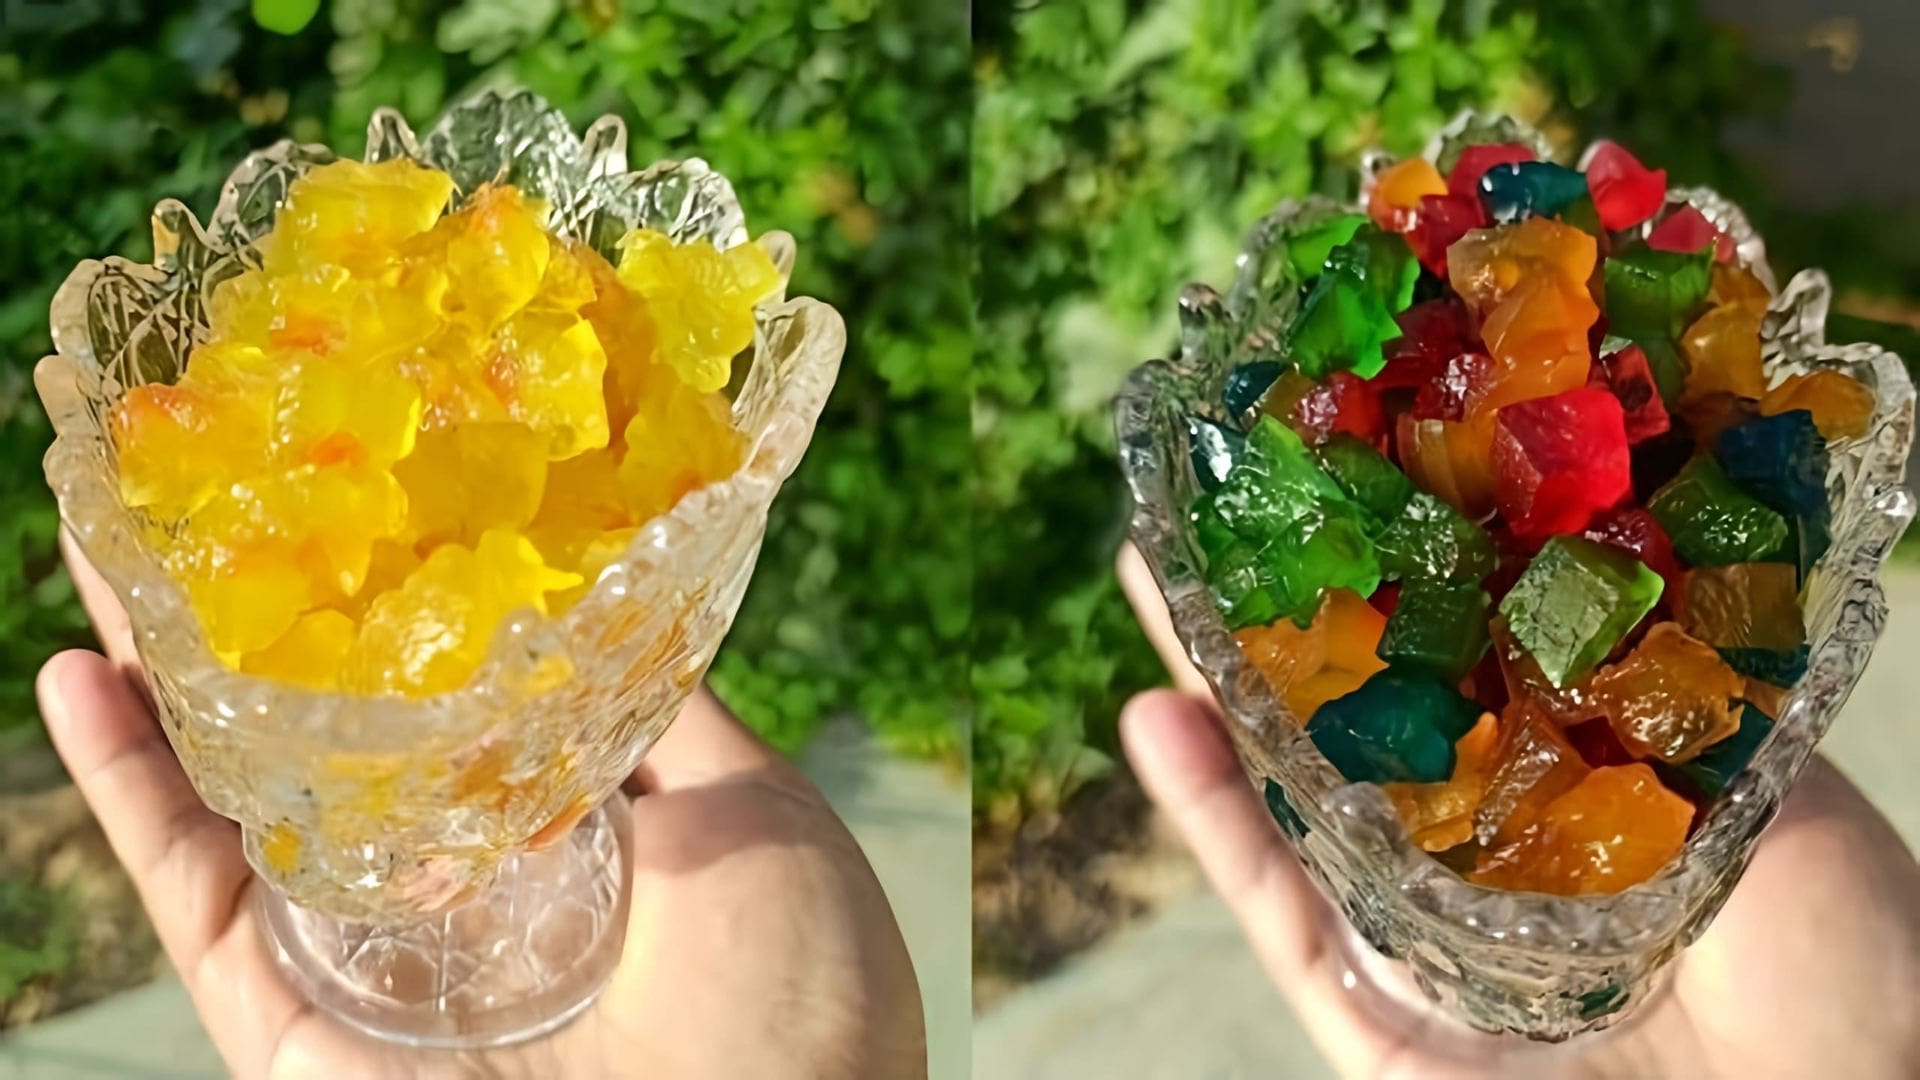 В этом видео-ролике мы увидим процесс приготовления сладких разноцветных цукатов из арбузных корок